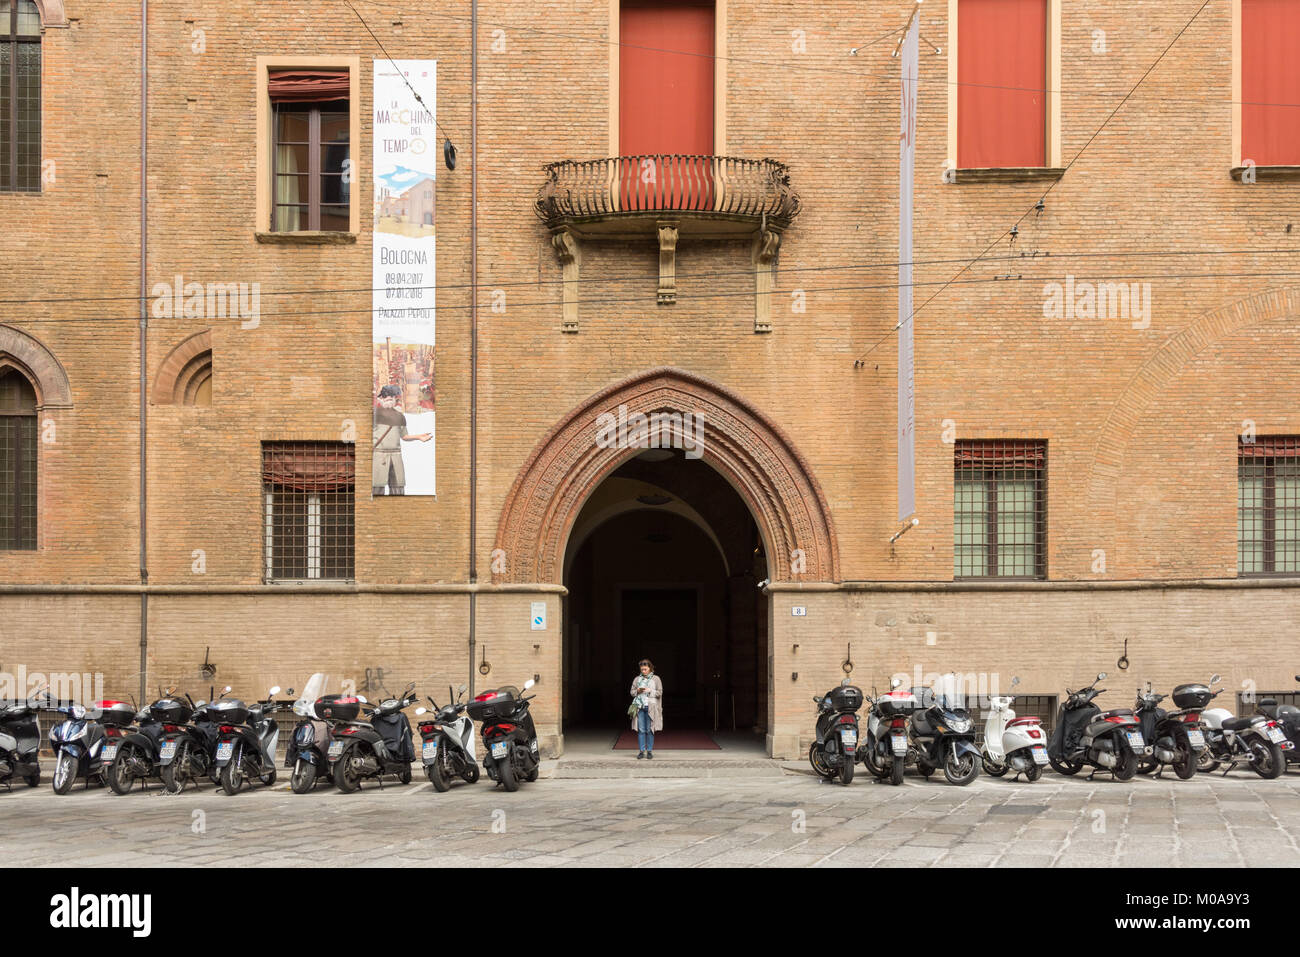 La entrada al museo Palazzo Pepoli en Bologna, Italia con una mujer de pie en la entrada y un montón de scooters y motocicletas estacionados en una fila Foto de stock